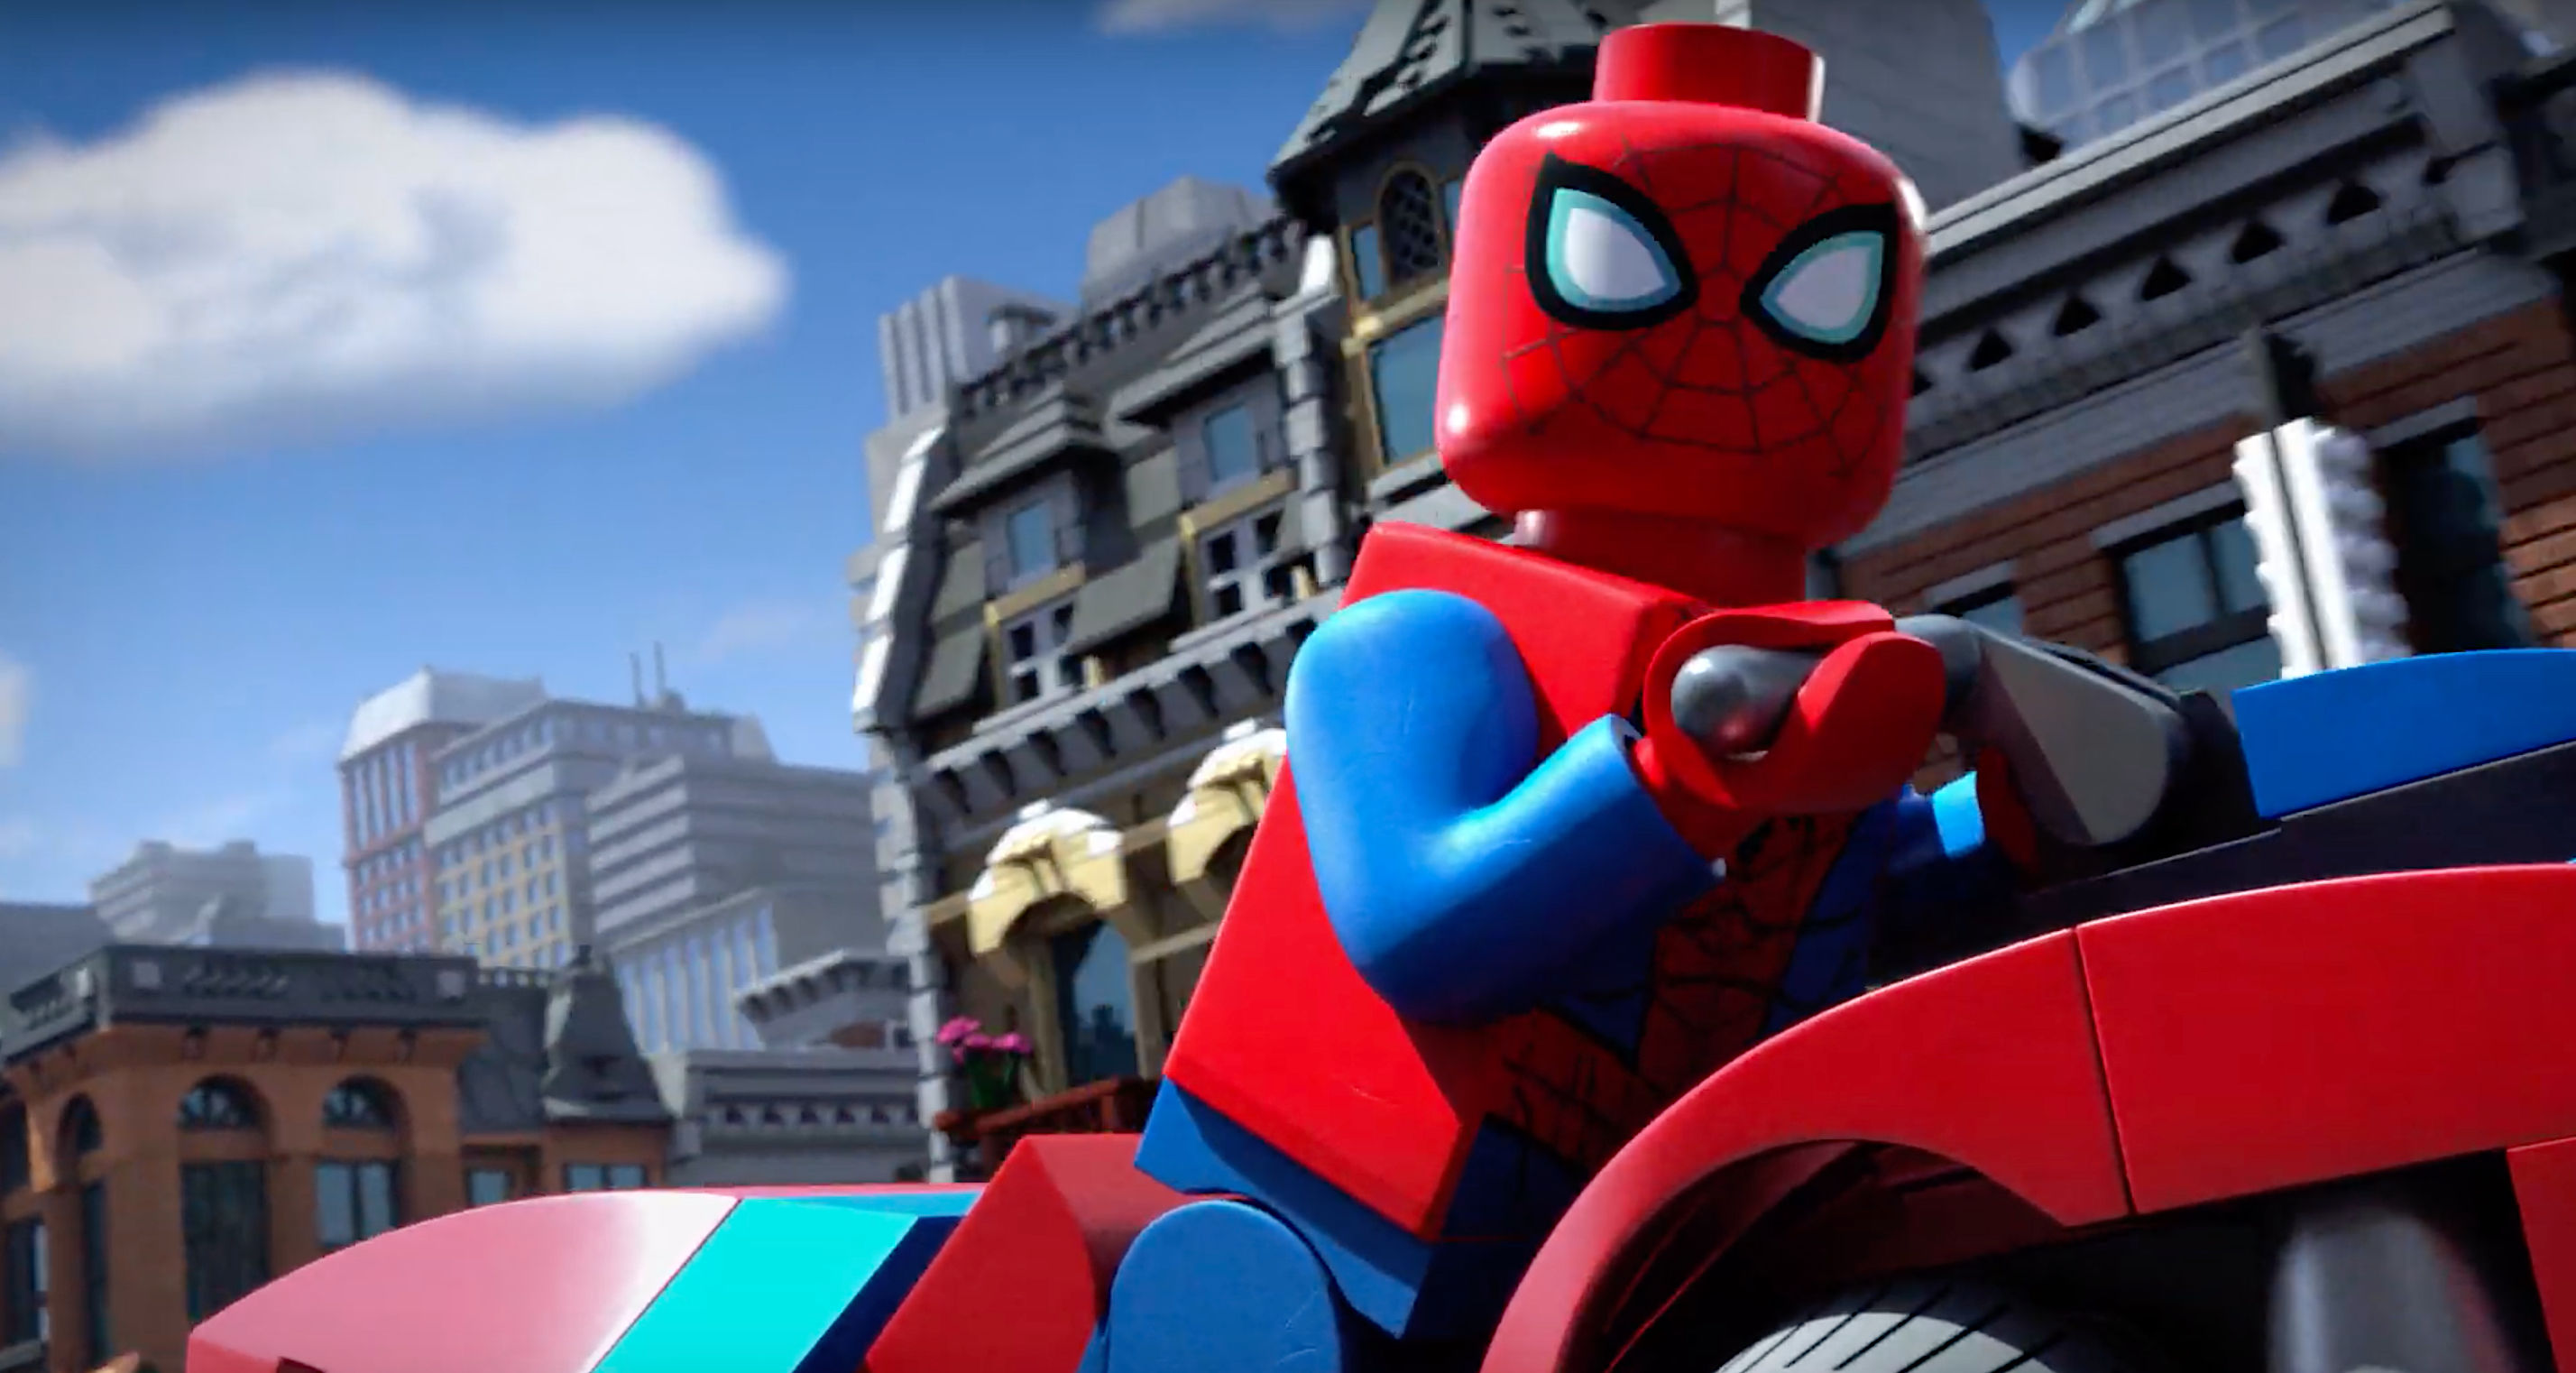 LEGO Spider-Man takes on Venom in new Marvel short | SYFY WIRE